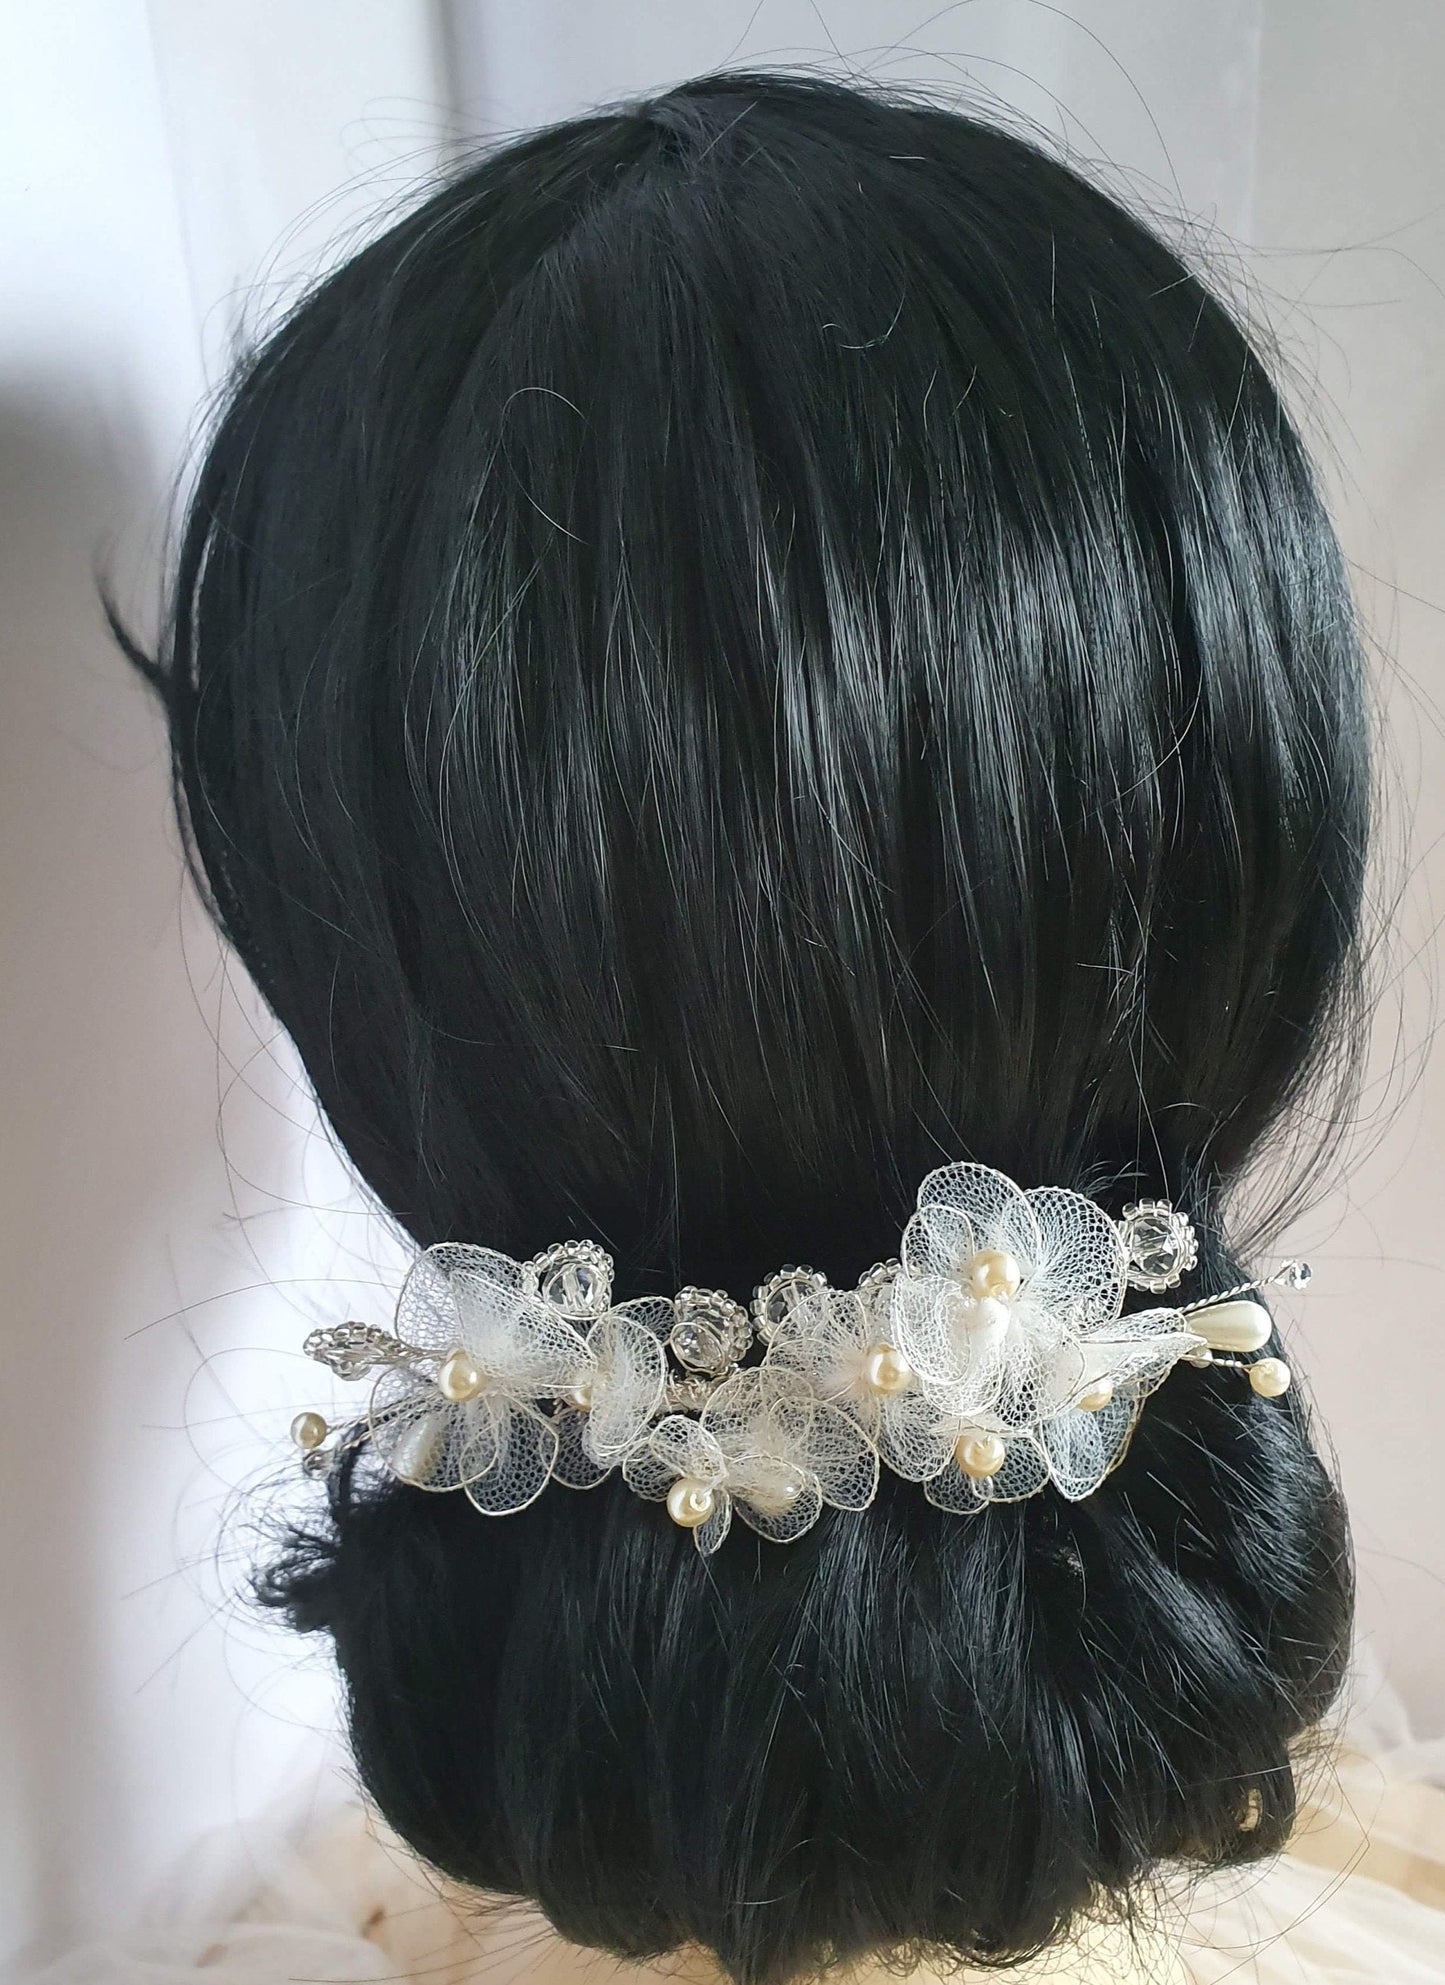 Handgemaakte bruidskam met parels, druppelstenen en bloemen van tule - haaraccessoire voor bruiloften met  zilverkleurige metalen kam